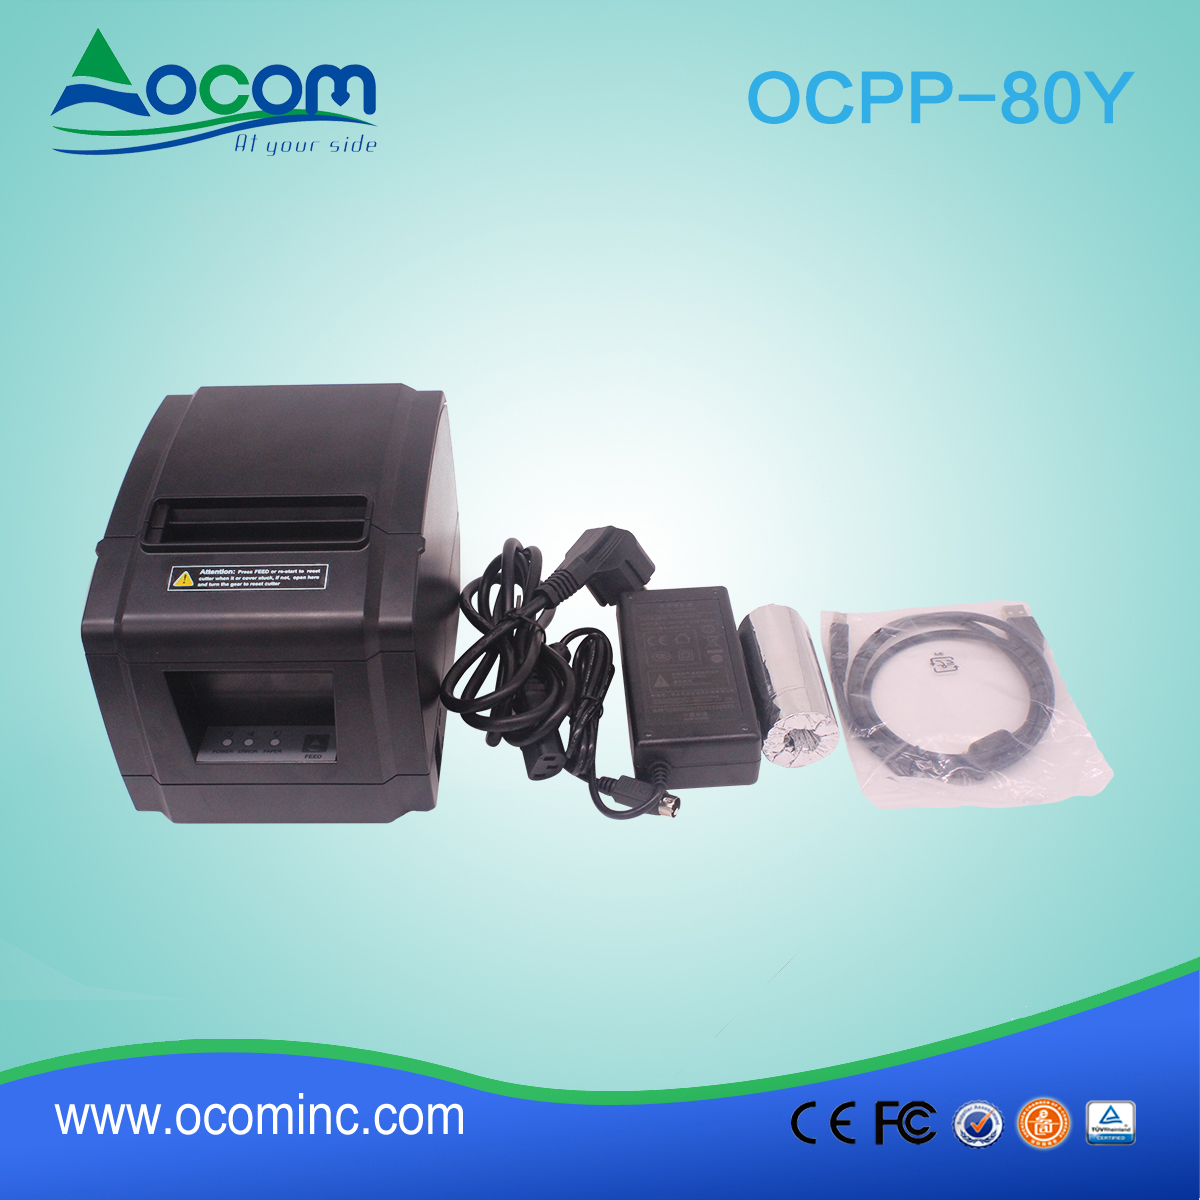 OCPP-88A-China 80mm POS buy printer está promovendo